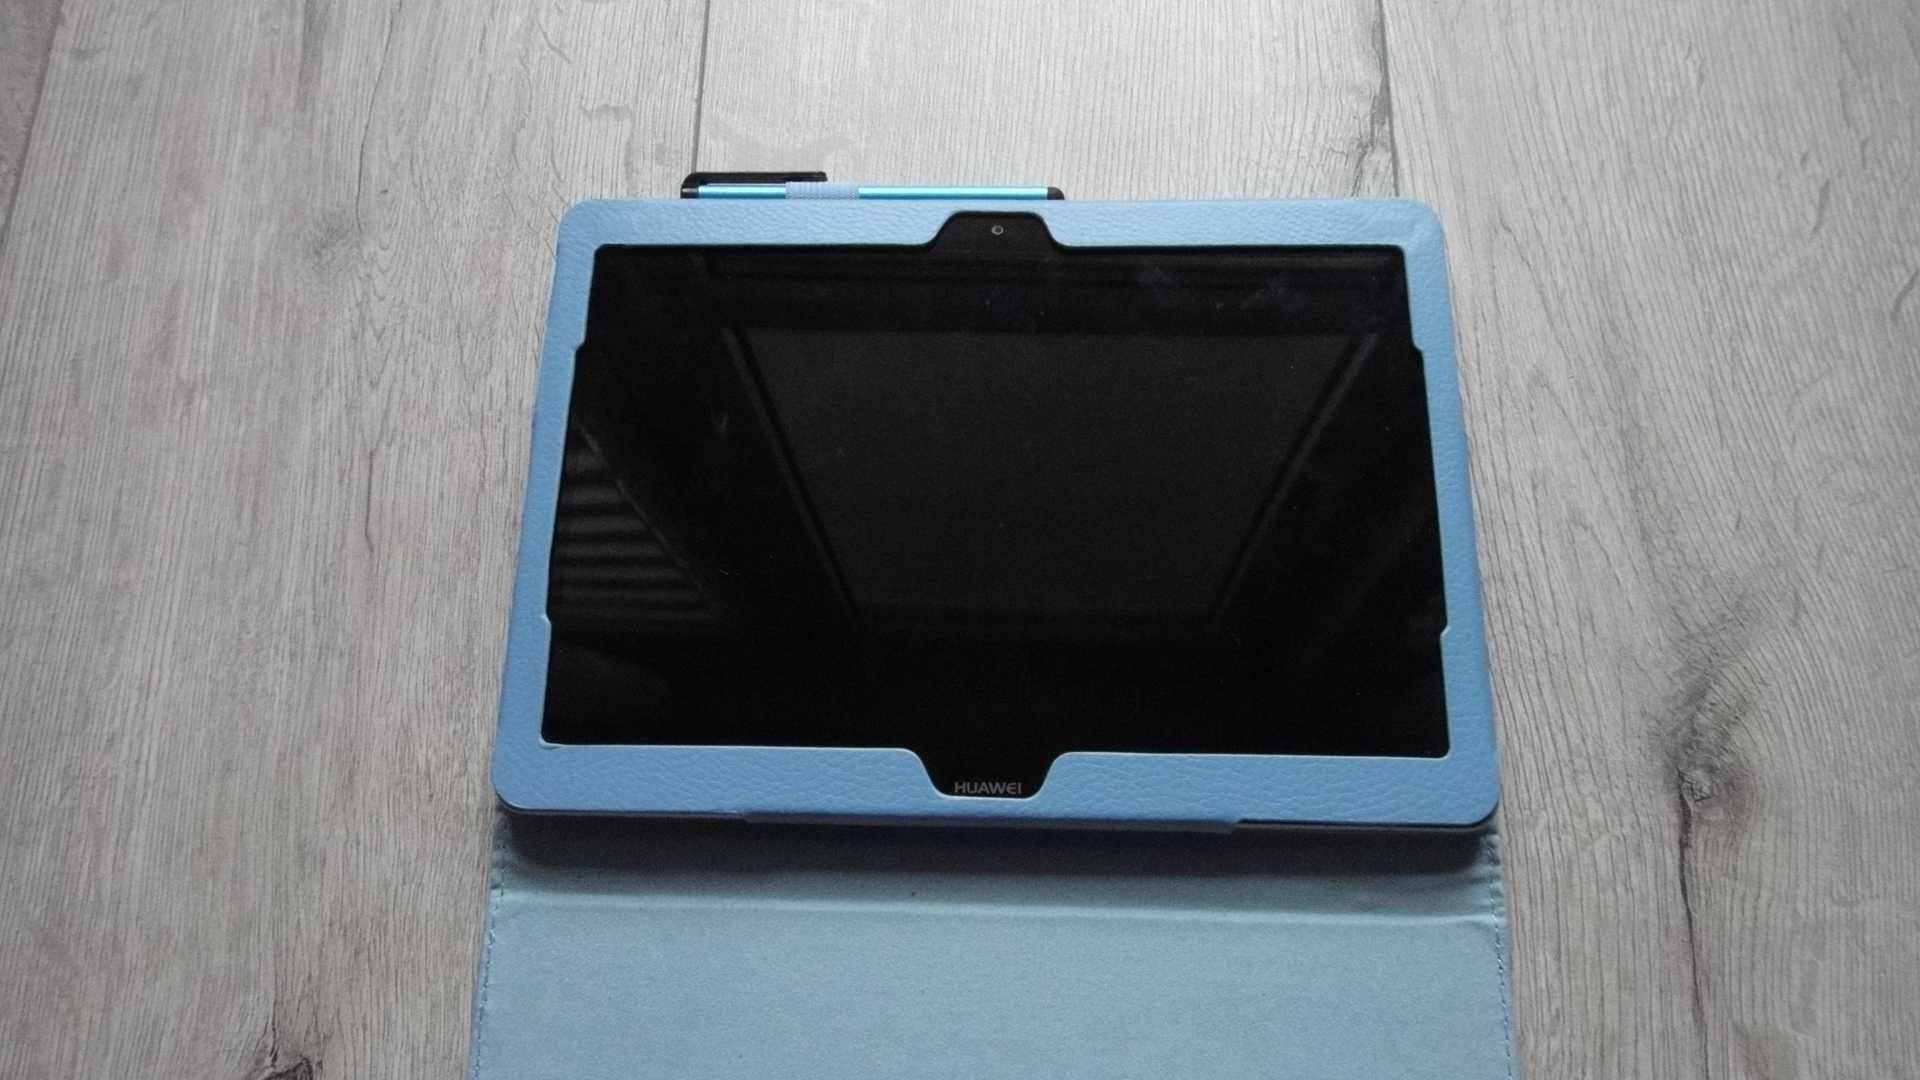 Tablet Huawei MediaPad T3 10 9,6" 2 / 16 Gb. plus 8Gb.SD